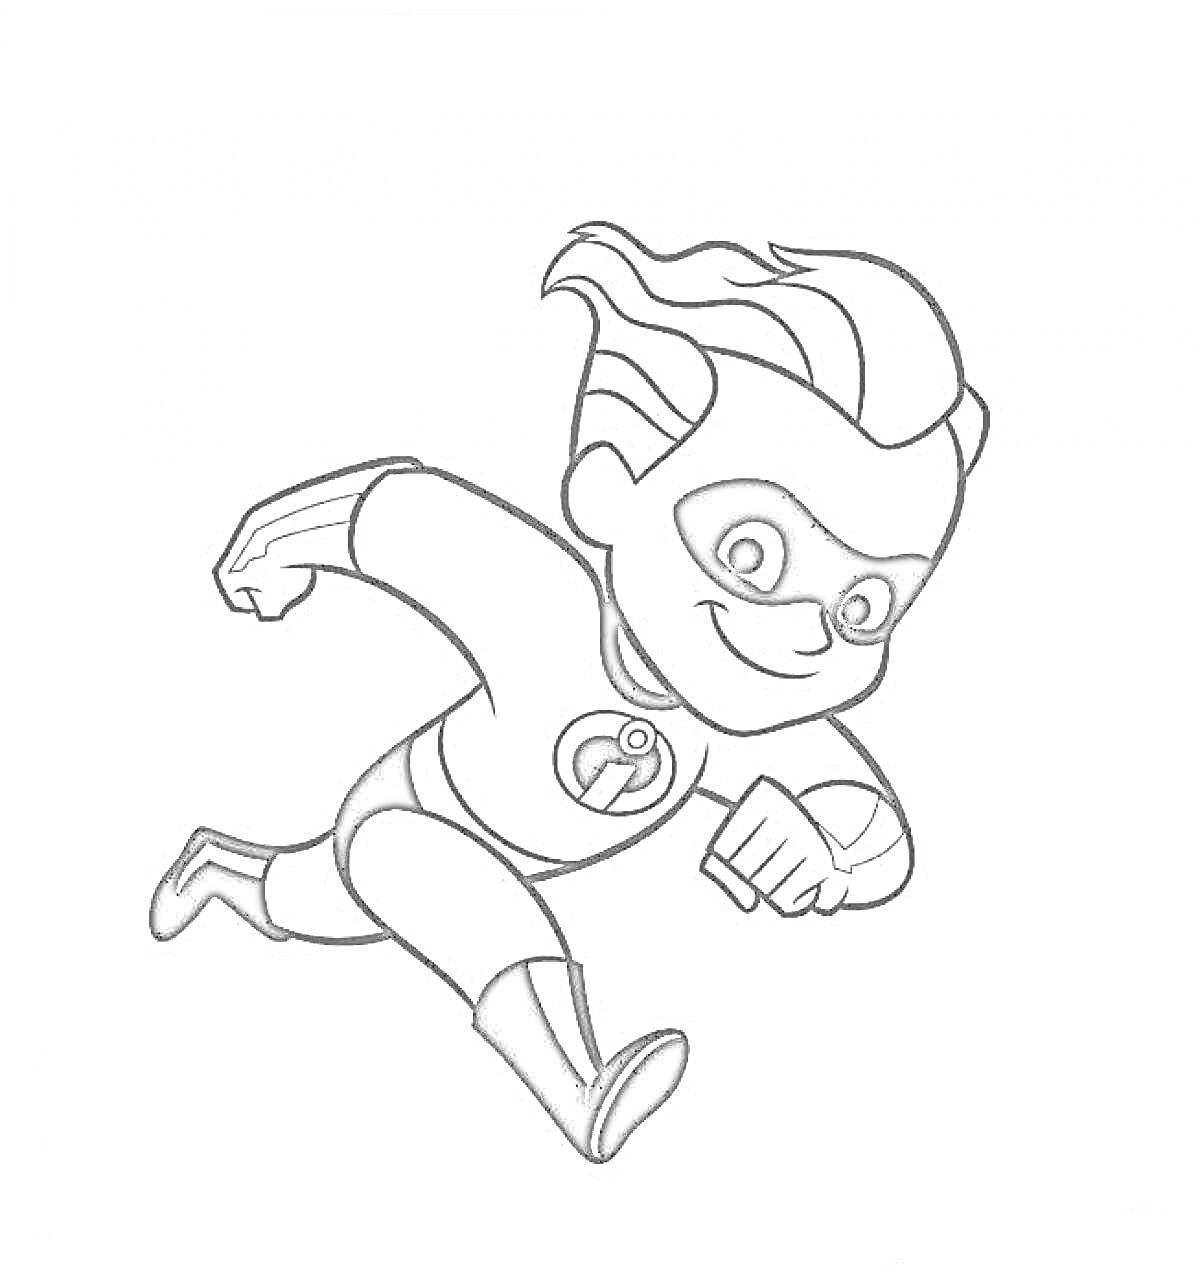 Персонаж из Суперсемейки, мальчик в маске и костюме супергероя, в прыжке